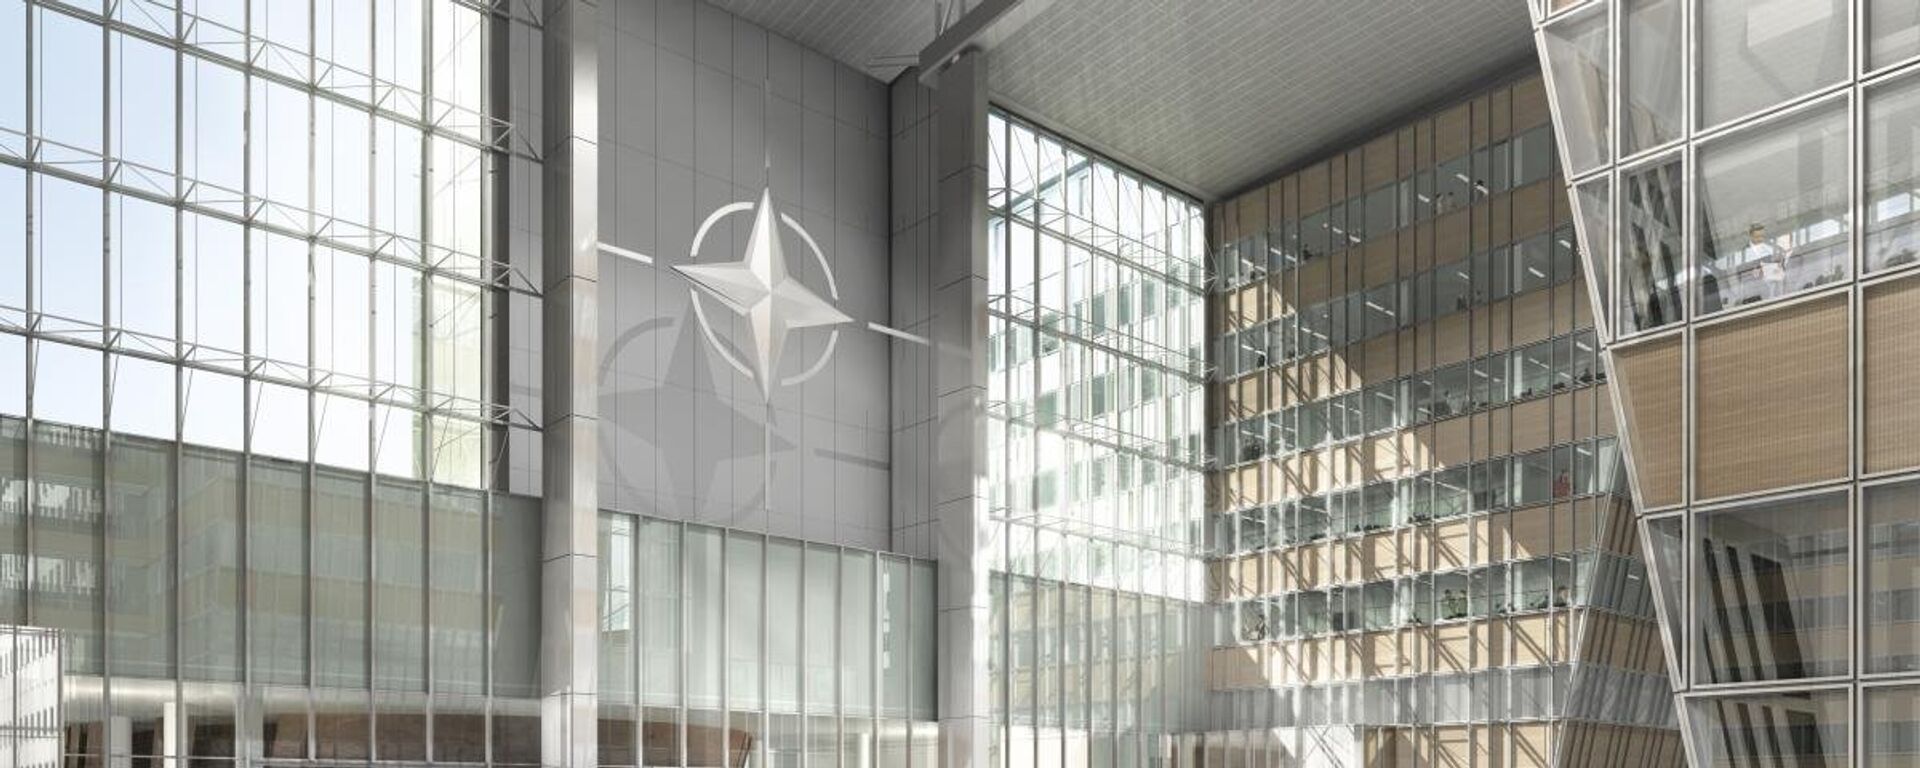 Новое здание штаб-квартиры НАТО в Брюсселе - Sputnik Արմենիա, 1920, 18.04.2021